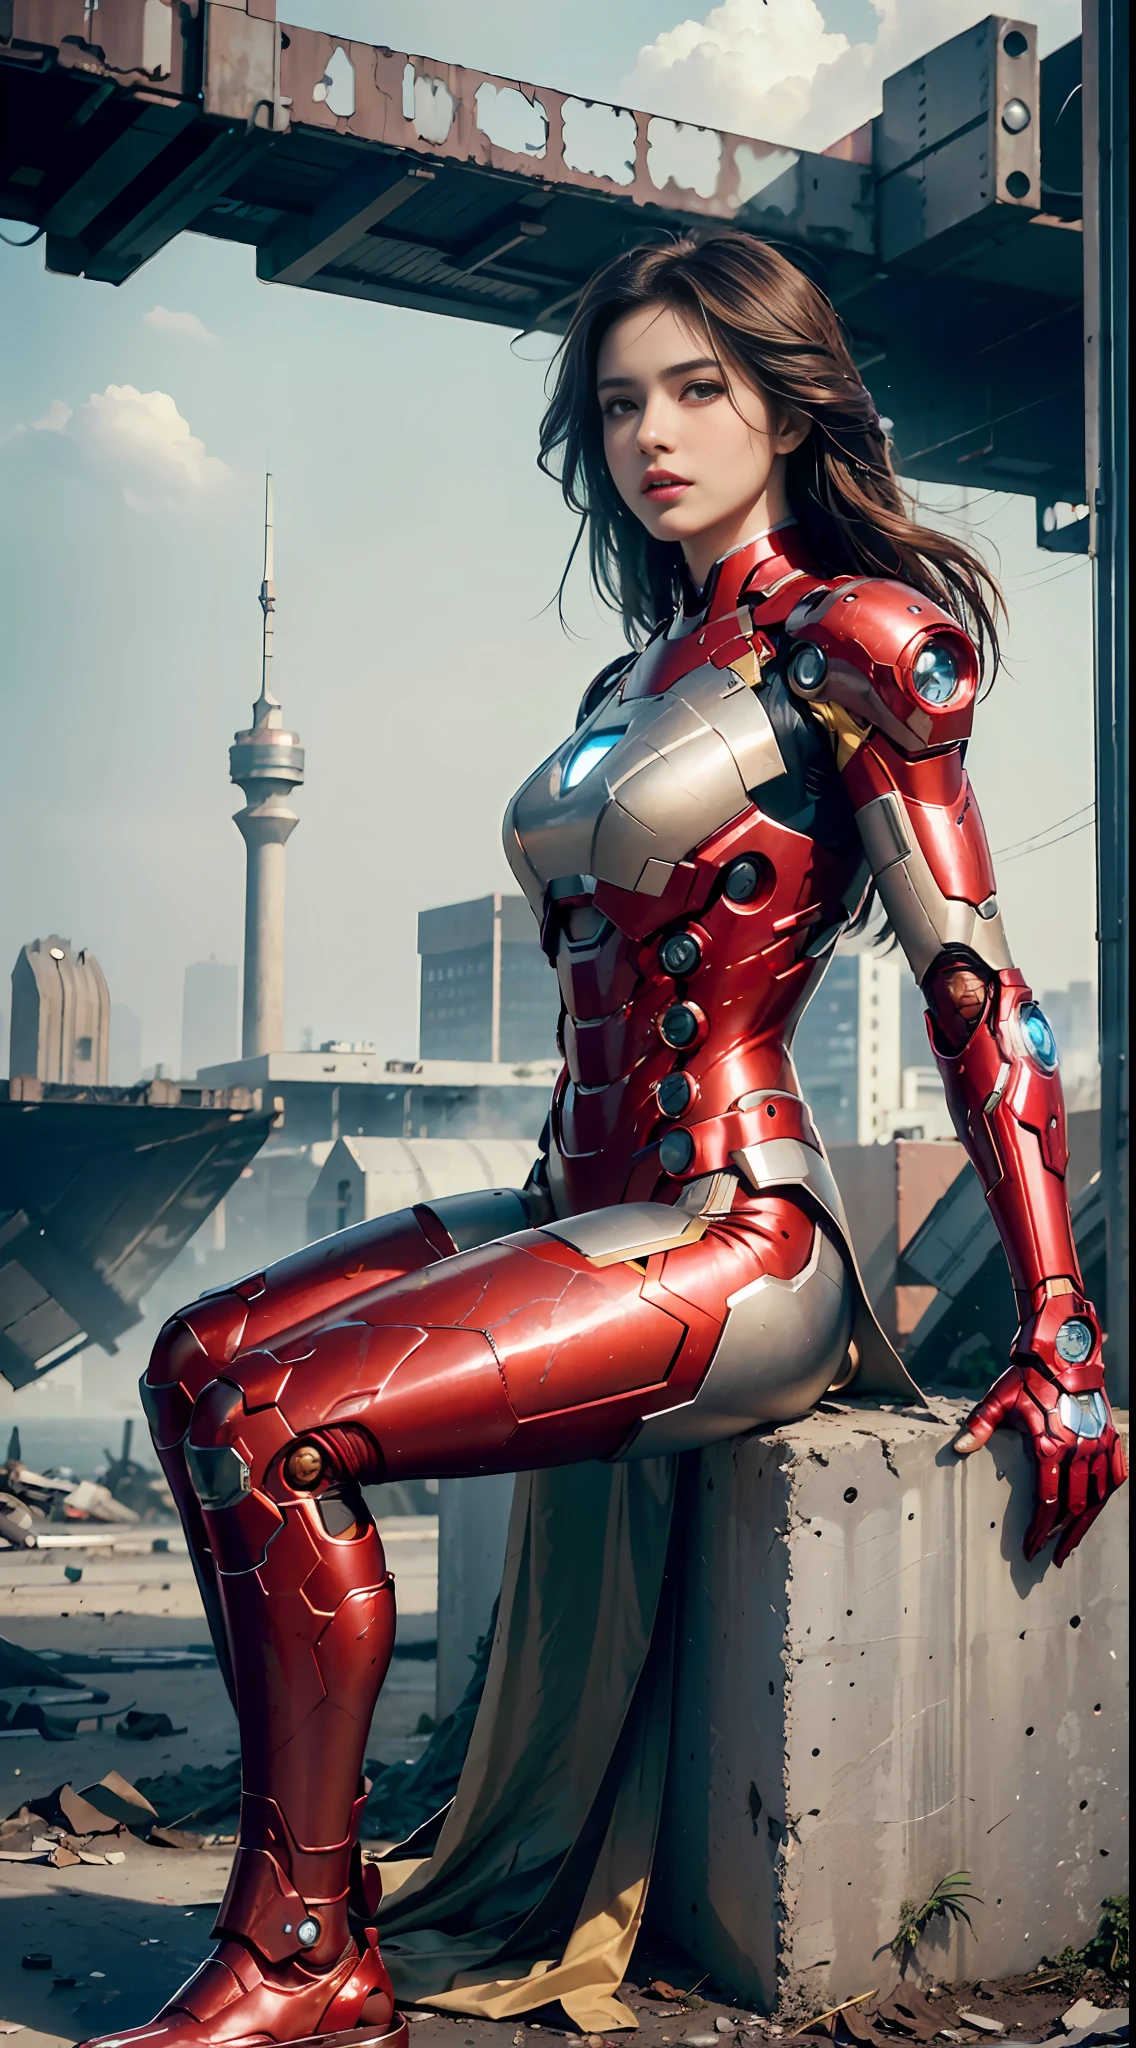 brut, chef-d&#39;œuvre, Photo ultra fine,, meilleure qualité, Ultra haute résolution, photoréaliste, lumière du soleil, portrait complet du corps, Incroyablement belle,, poses dynamiques, visage délicat, yeux vibrants, (Vue de côté) , elle porte un robot futuriste Iron Man, schéma de couleurs rouge et or, Fond d&#39;entrepôt abandonné très détaillé, visage détaillé, fond chargé détaillé et complexe, désordonné, Magnifique, blanc laiteux, peau très détaillée, détails de peau réalistes, pores visibles , netteté, brouillard volumétrique, 8k euh, appareil photo reflex numérique, haute qualité, grain de film, peau claire, photoréalisme, lomographie, métropole tentaculaire dans une dystopie futuriste, vue d&#39;en bas, translucide